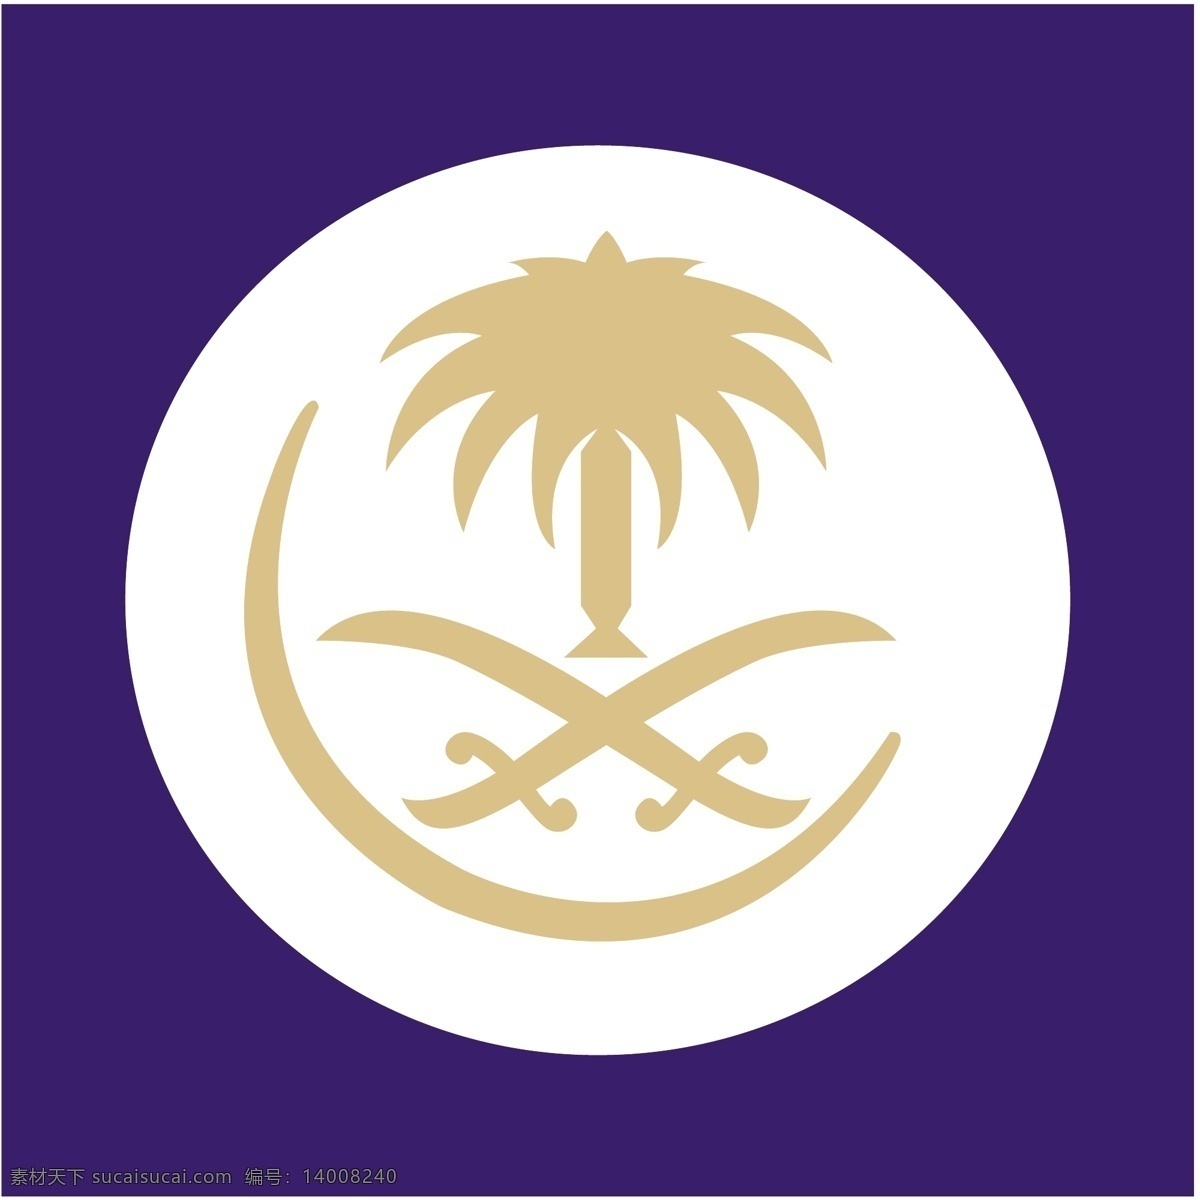 阿拉伯 航空公司 沙特阿拉伯 沙特 航空 标志 沙特航空标志 沙特航空 办公室 矢量图 建筑家居